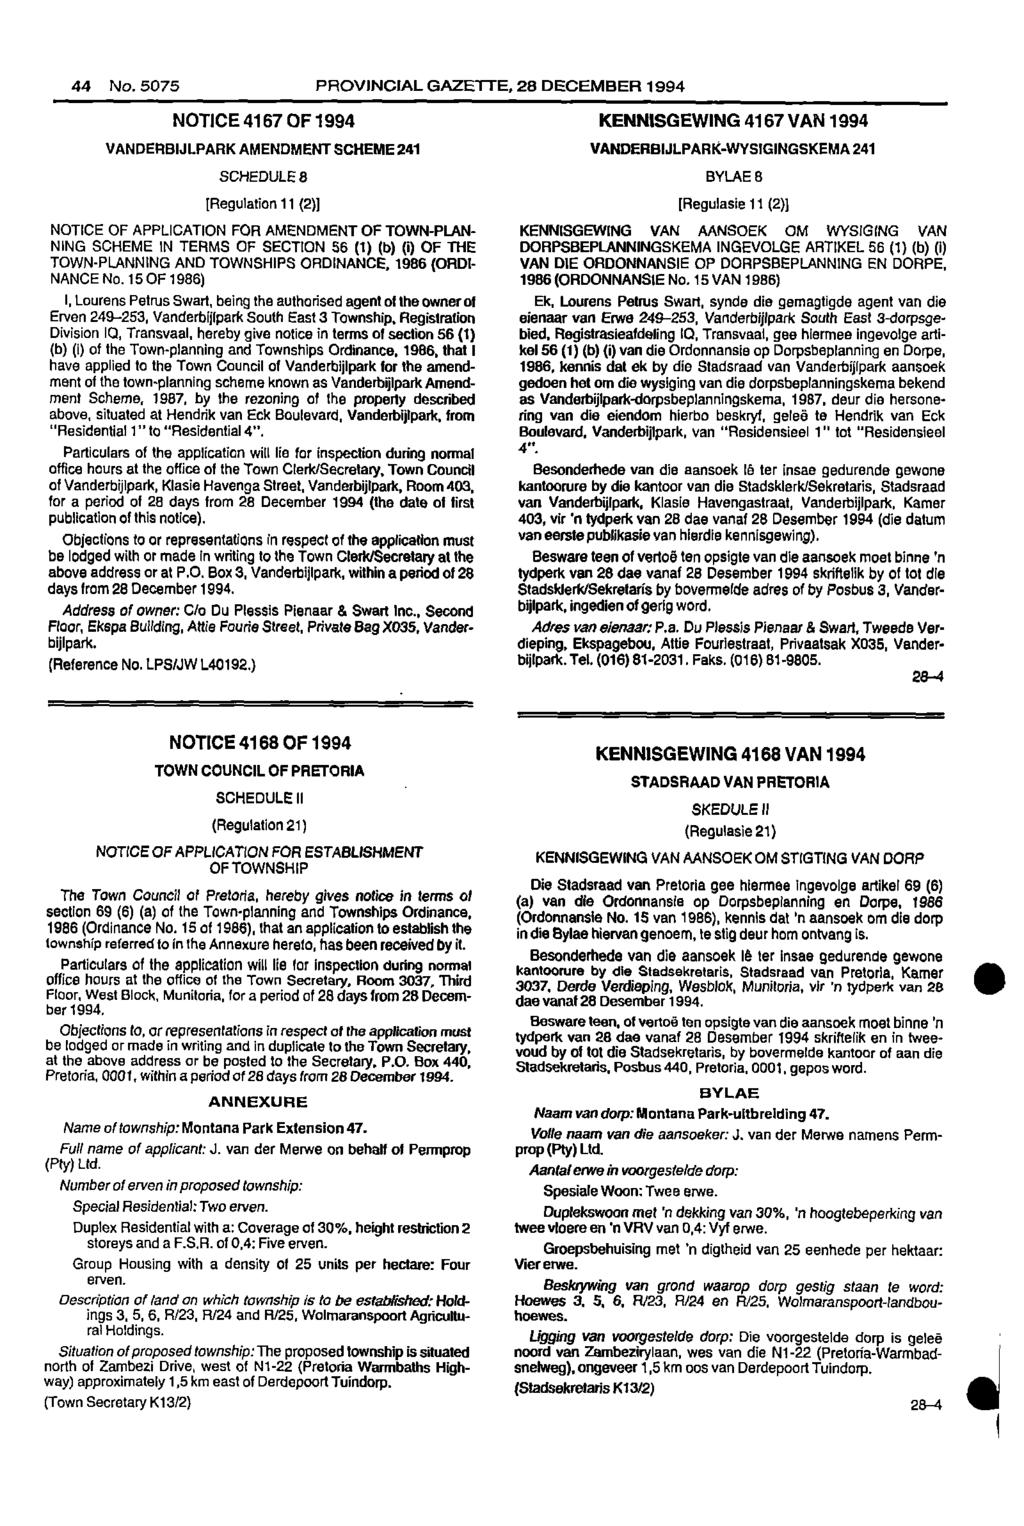 44 No 5075 PROVINCIAL GAZETTE, 28 DECEMBER 1994 NOTICE 4167 OF 1994 KENNISGEWING 4167 VAN 1994 VANDERBIJLPARK AMENDMENT SCHEME 241 VANDERBIJLPARKWYSIGINGSKEMA 241 SCHEDULE 8 BYLAE 8 [Regulation 11